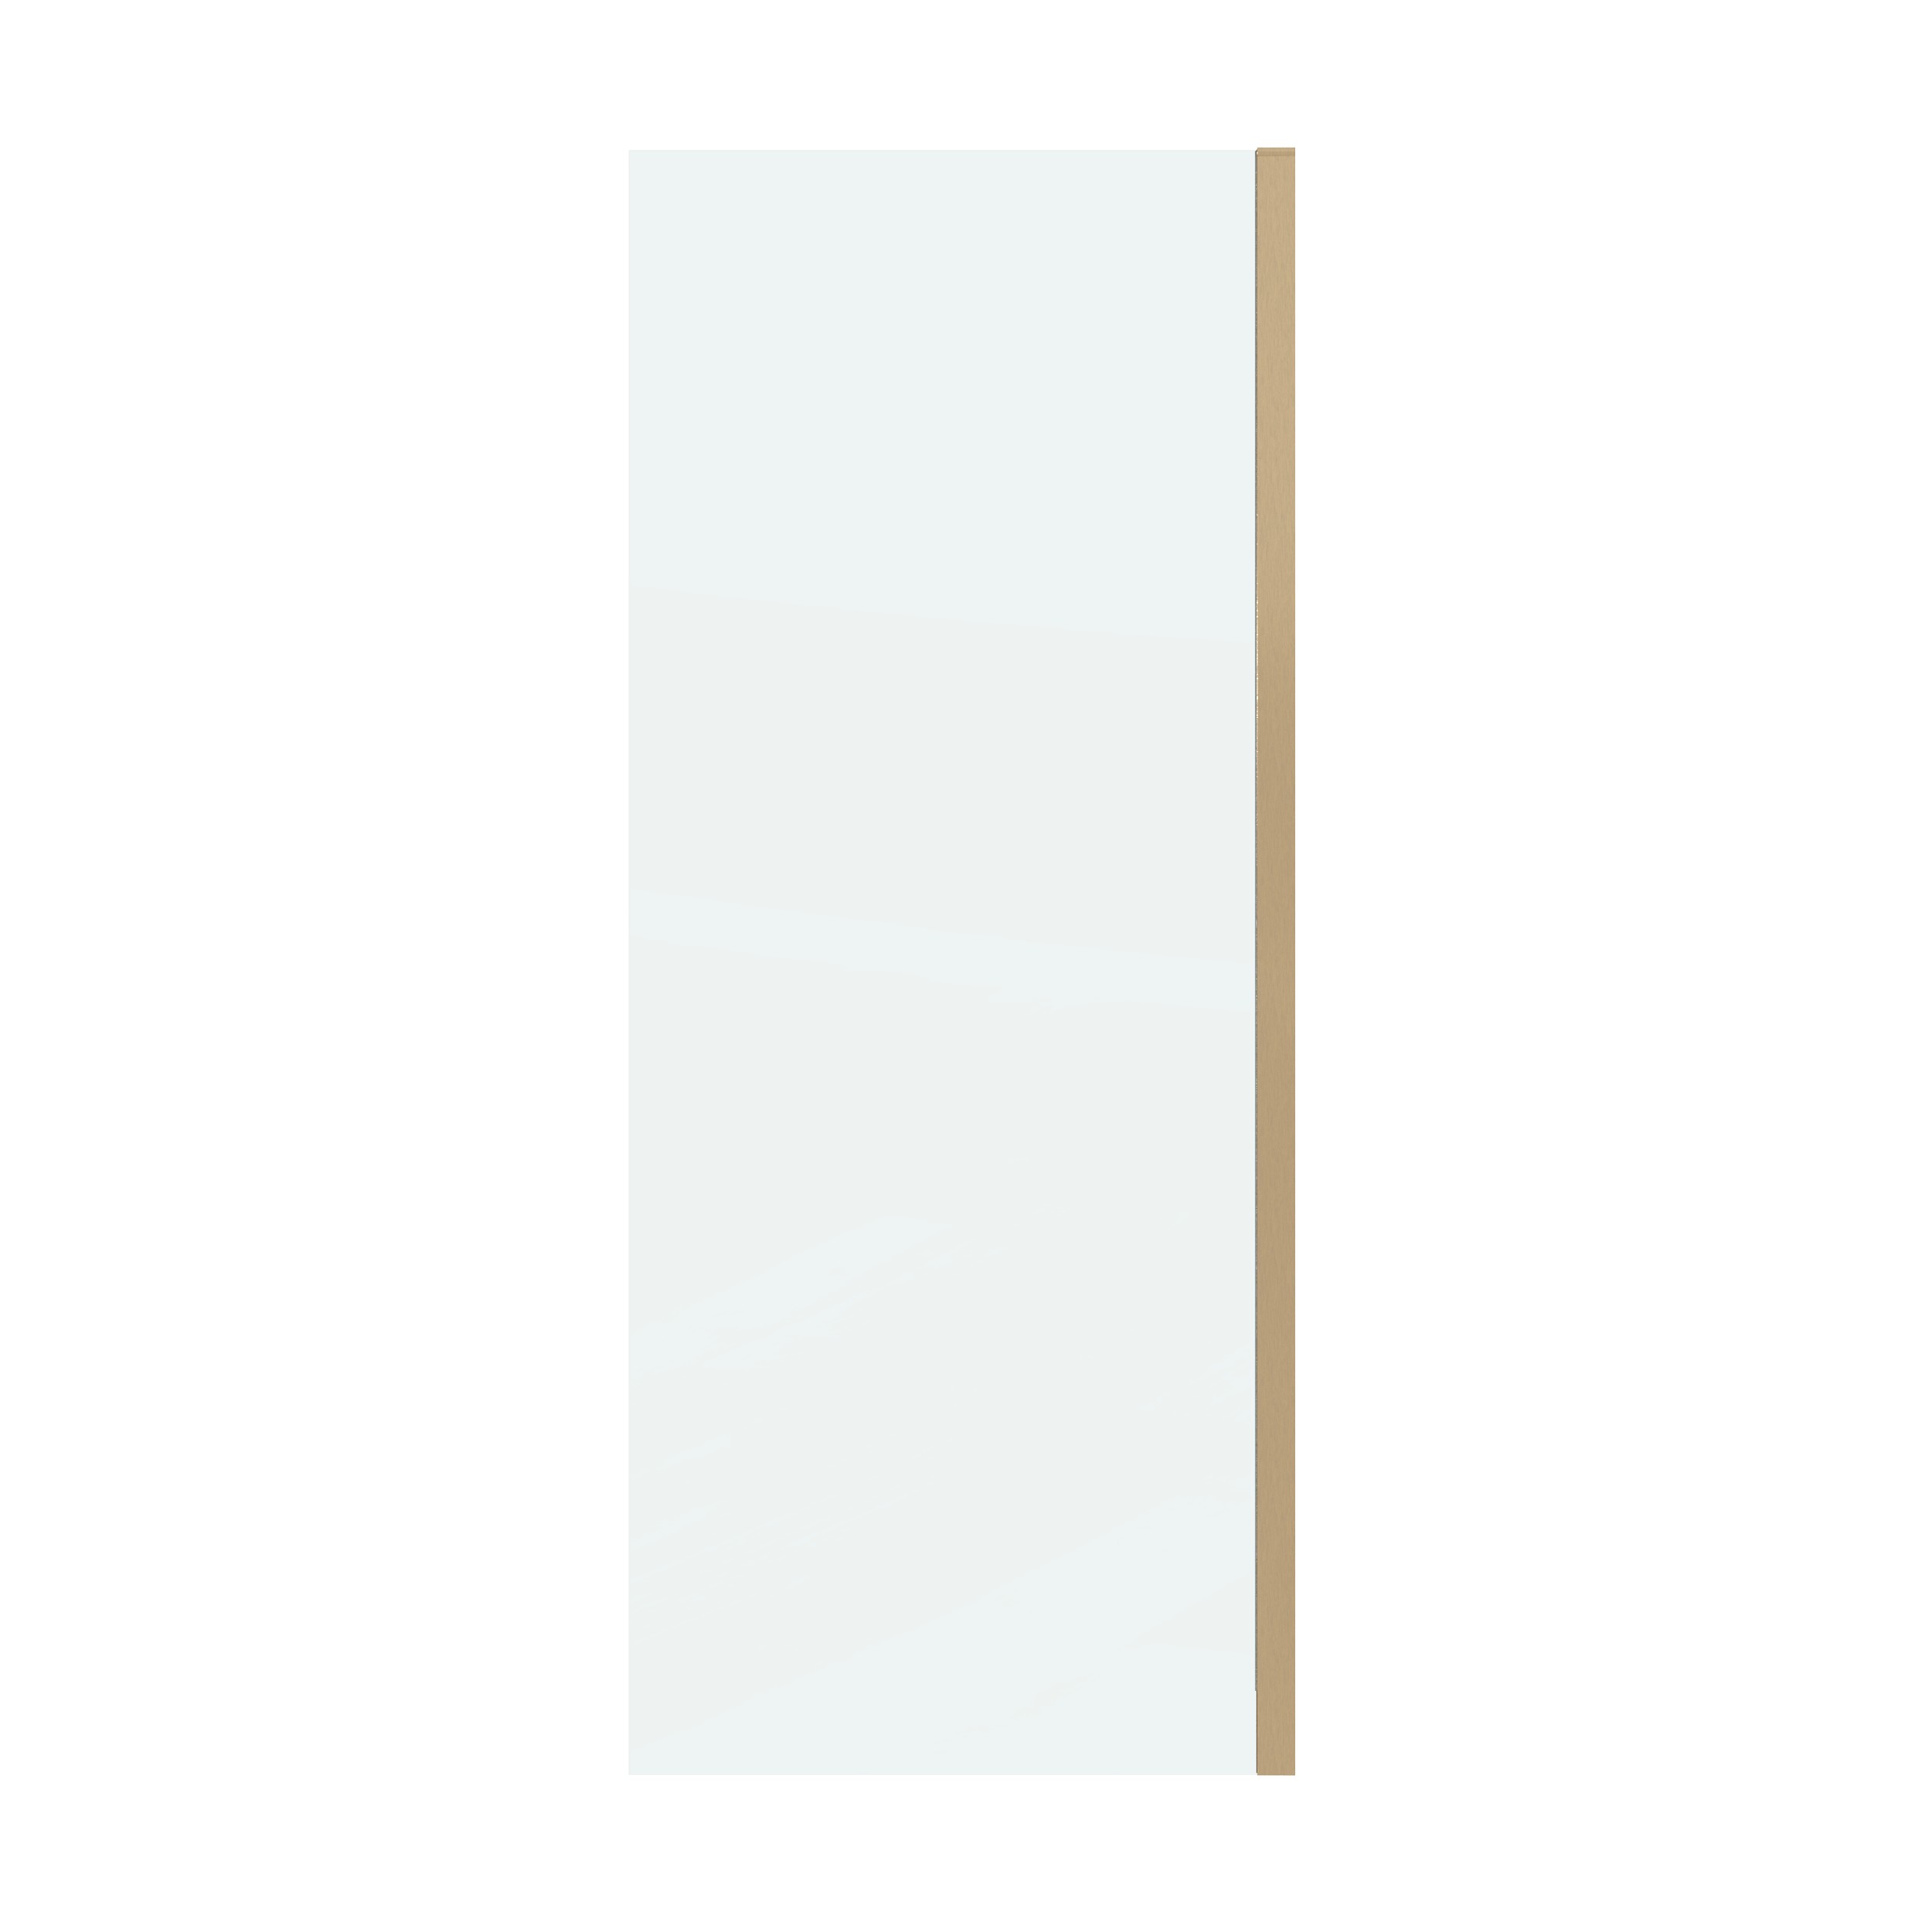 Боковая стенка Grossman Classic 80x195 200.K33.04.80.32.00 стекло прозрачное, профиль золото